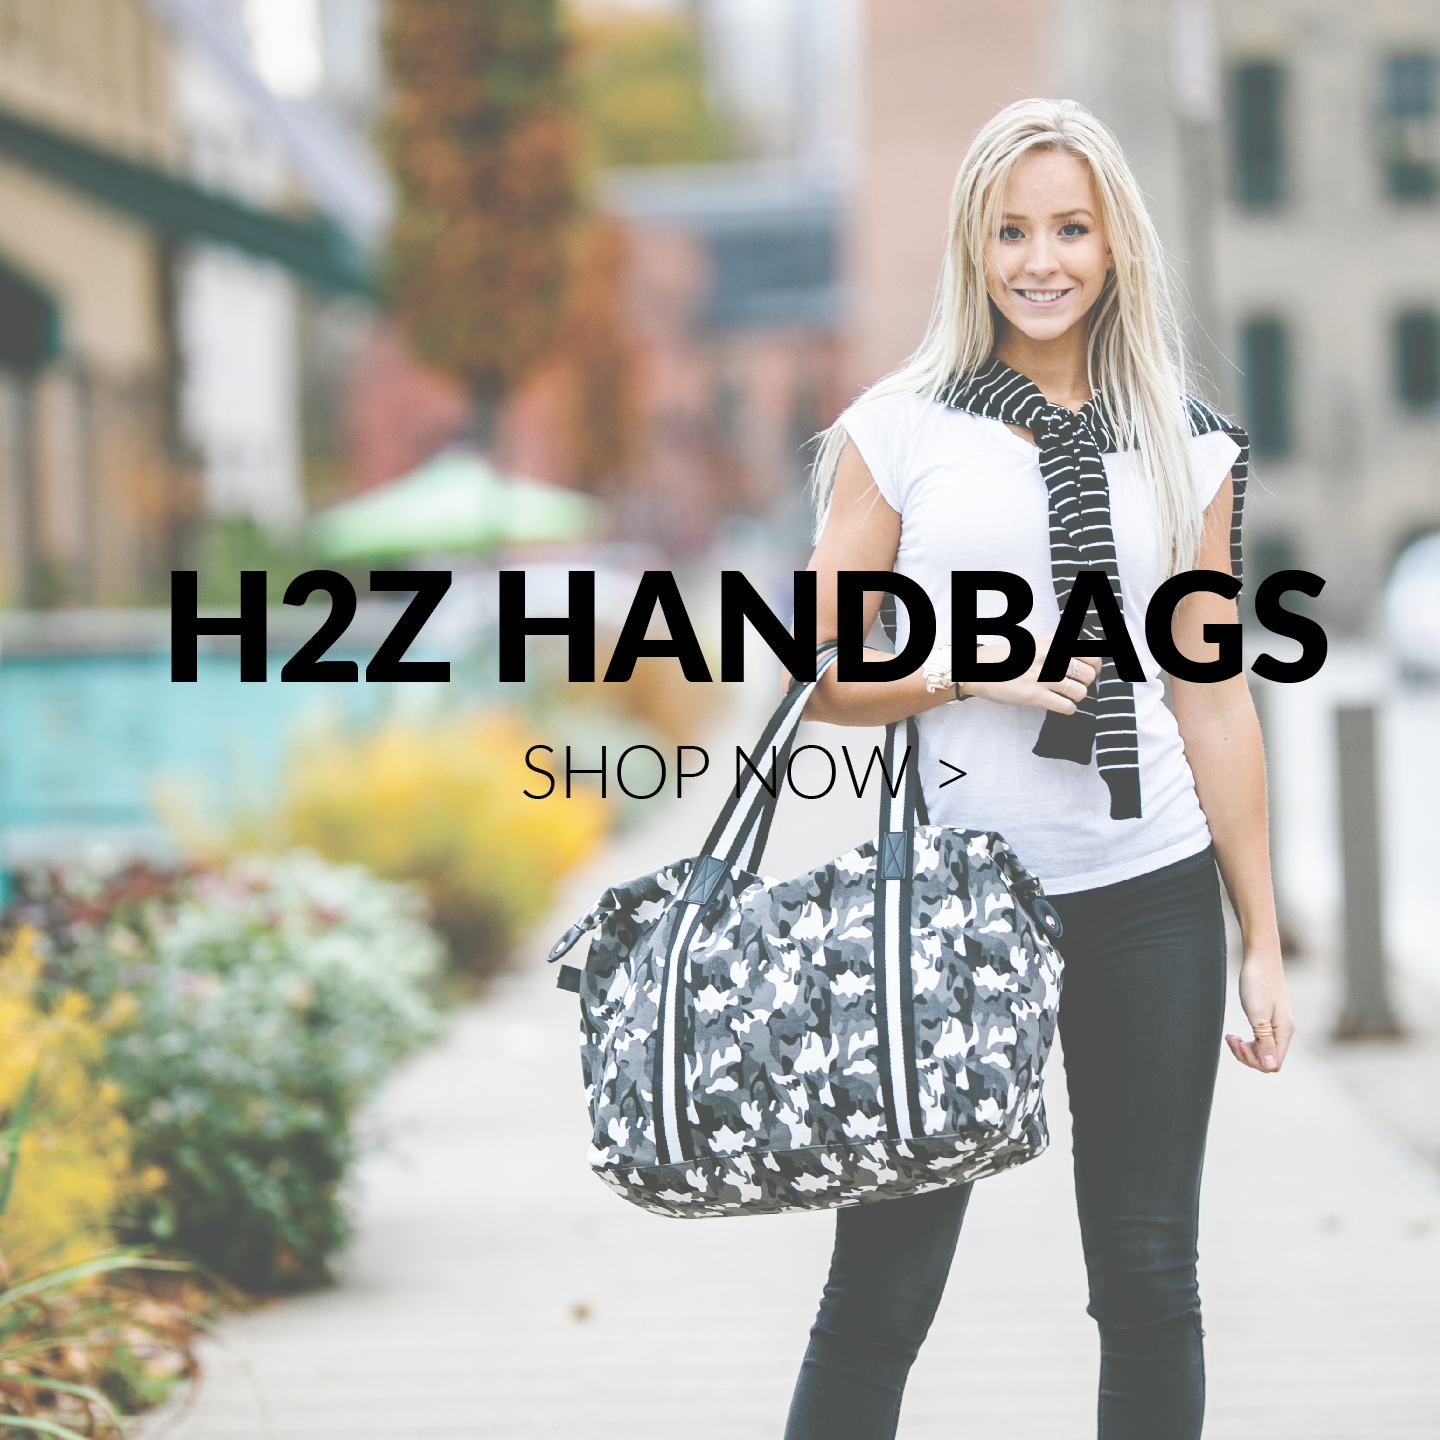 H2Z Handbags